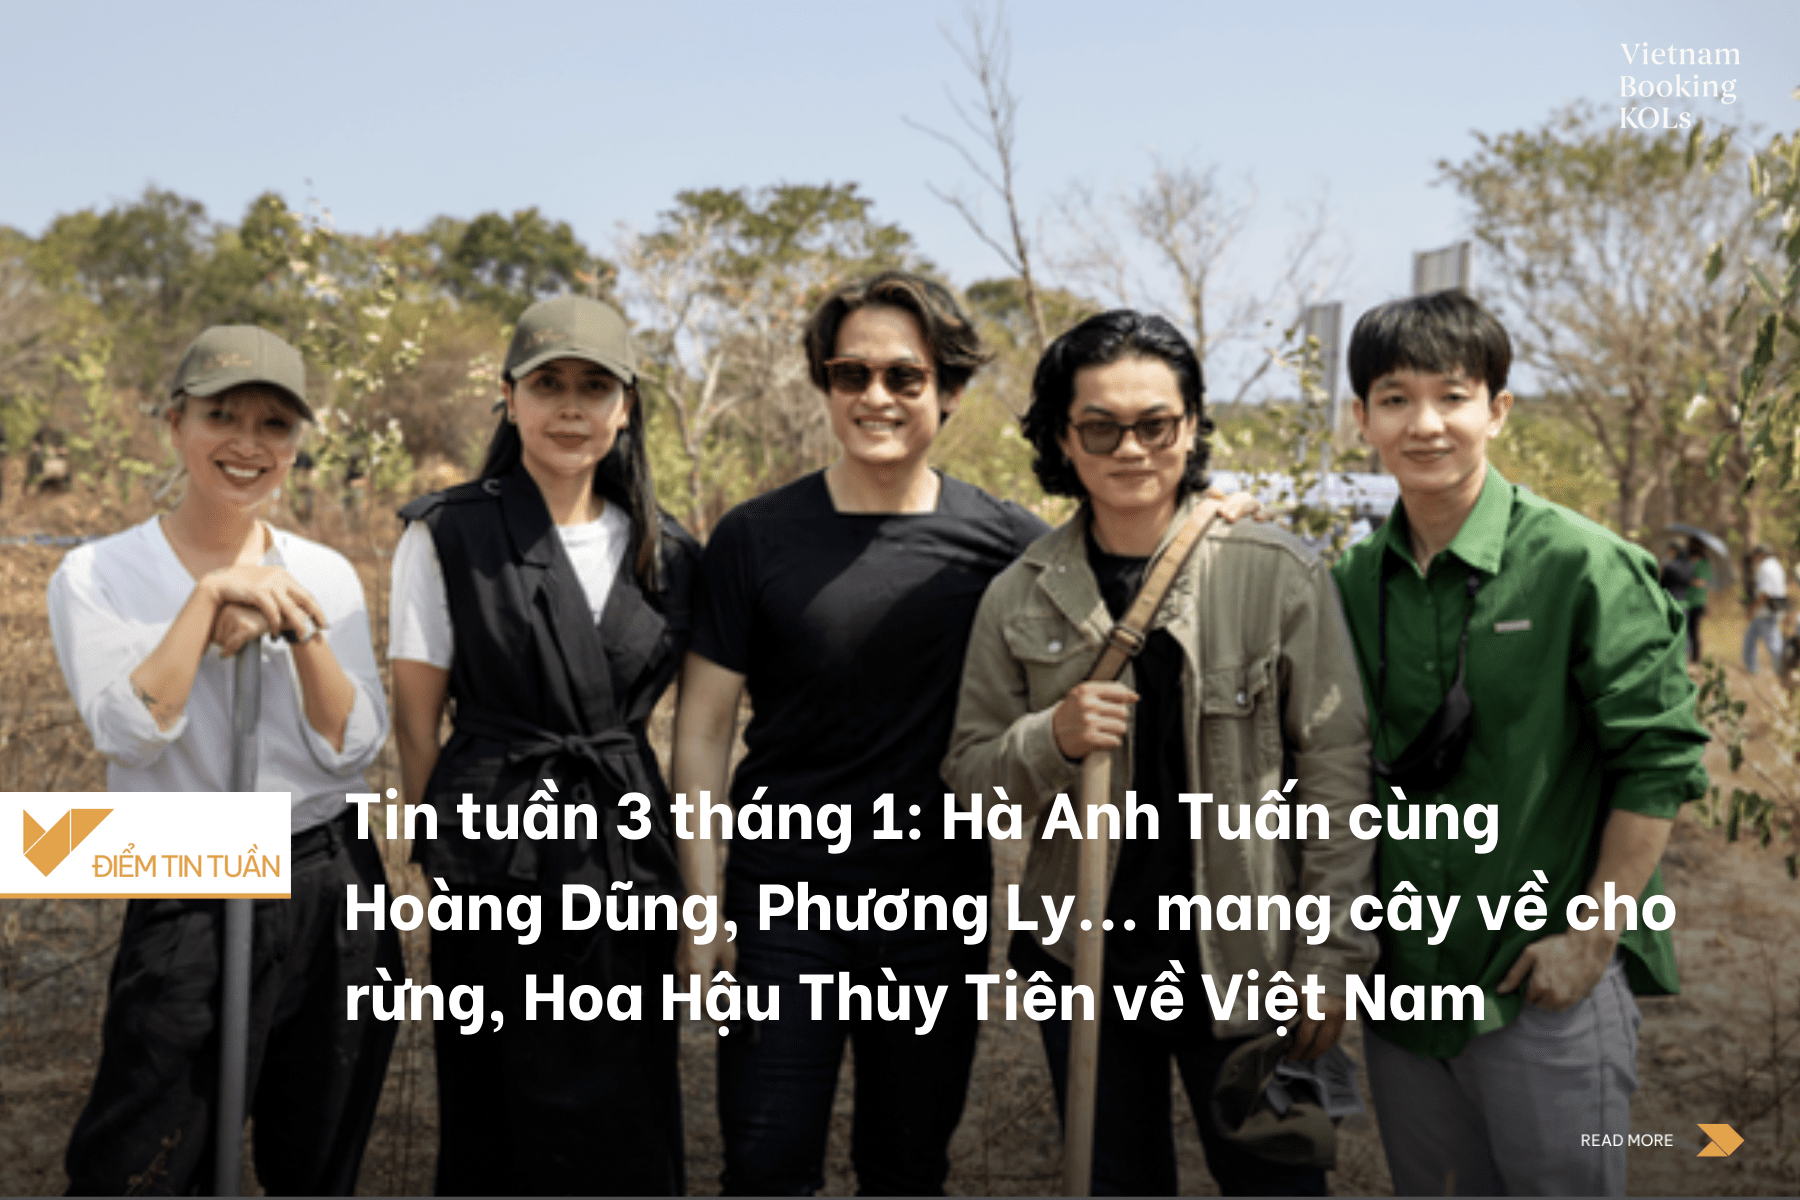 Tin tuần 3 tháng 1: Hà Anh Tuấn cùng Hoàng Dũng, Phương Ly... mang cây về cho rừng, Hoa Hậu Thùy Tiên về Việt Nam